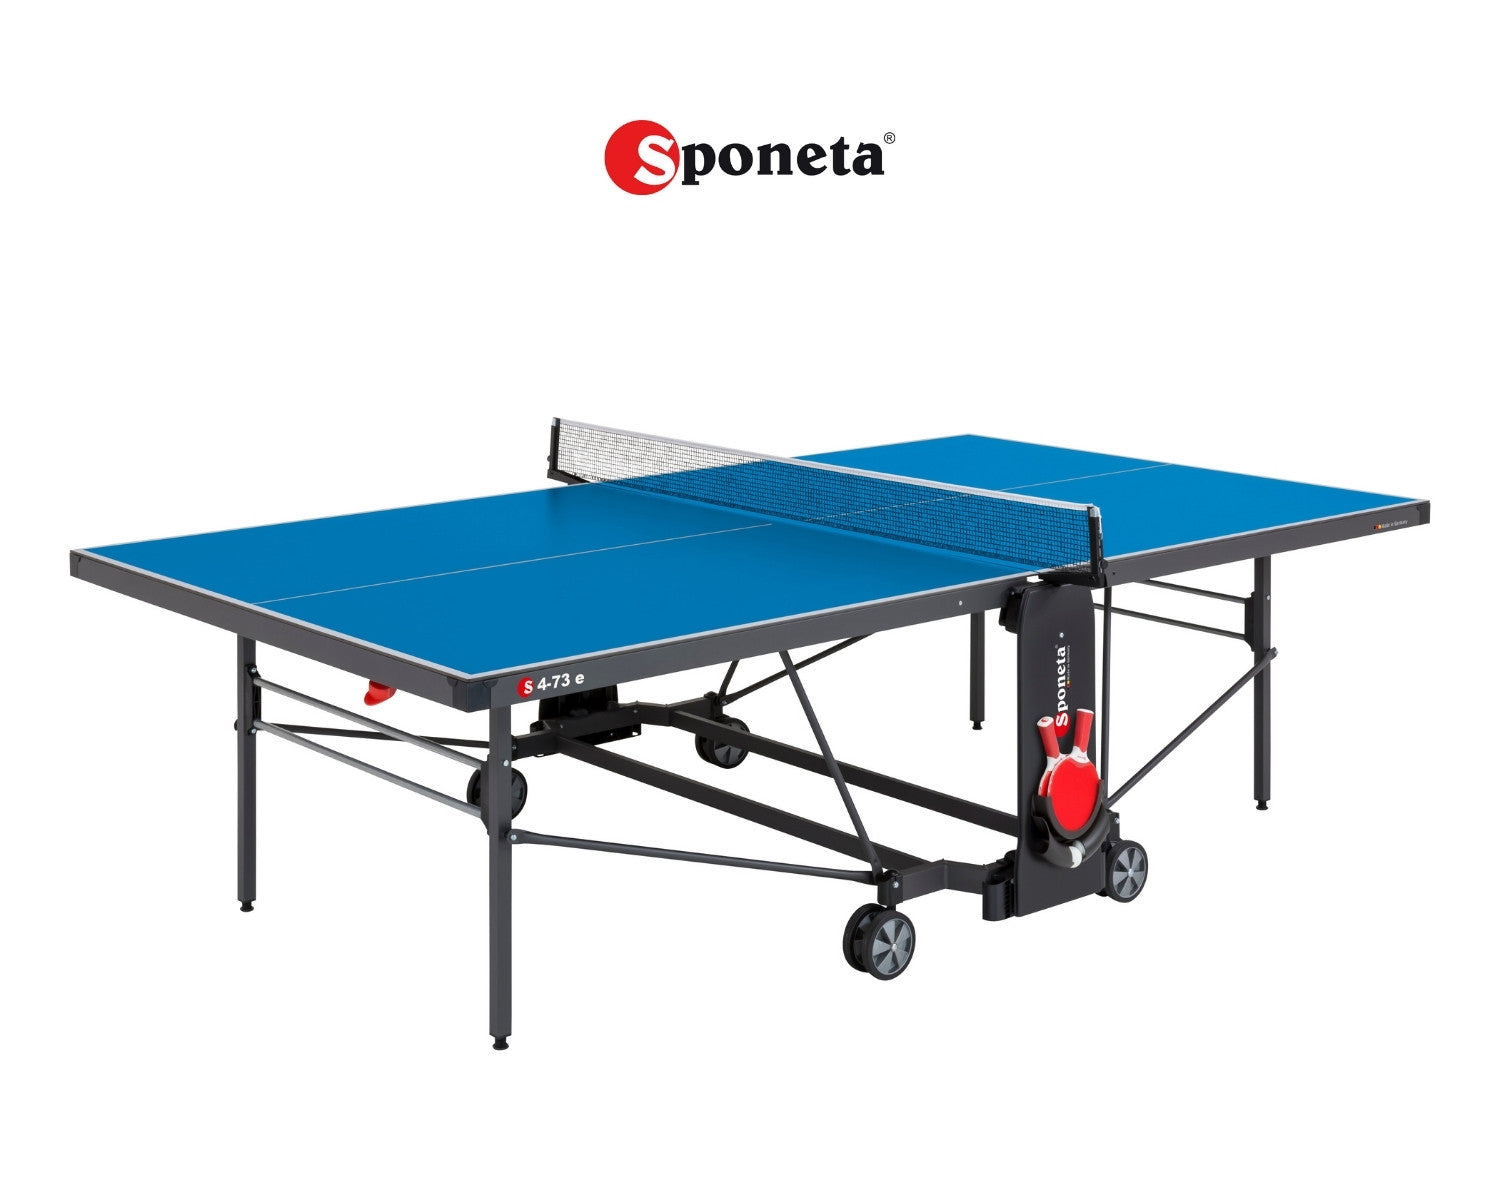 Sponeta Outdoor Tischtennistisch S 4-73 e